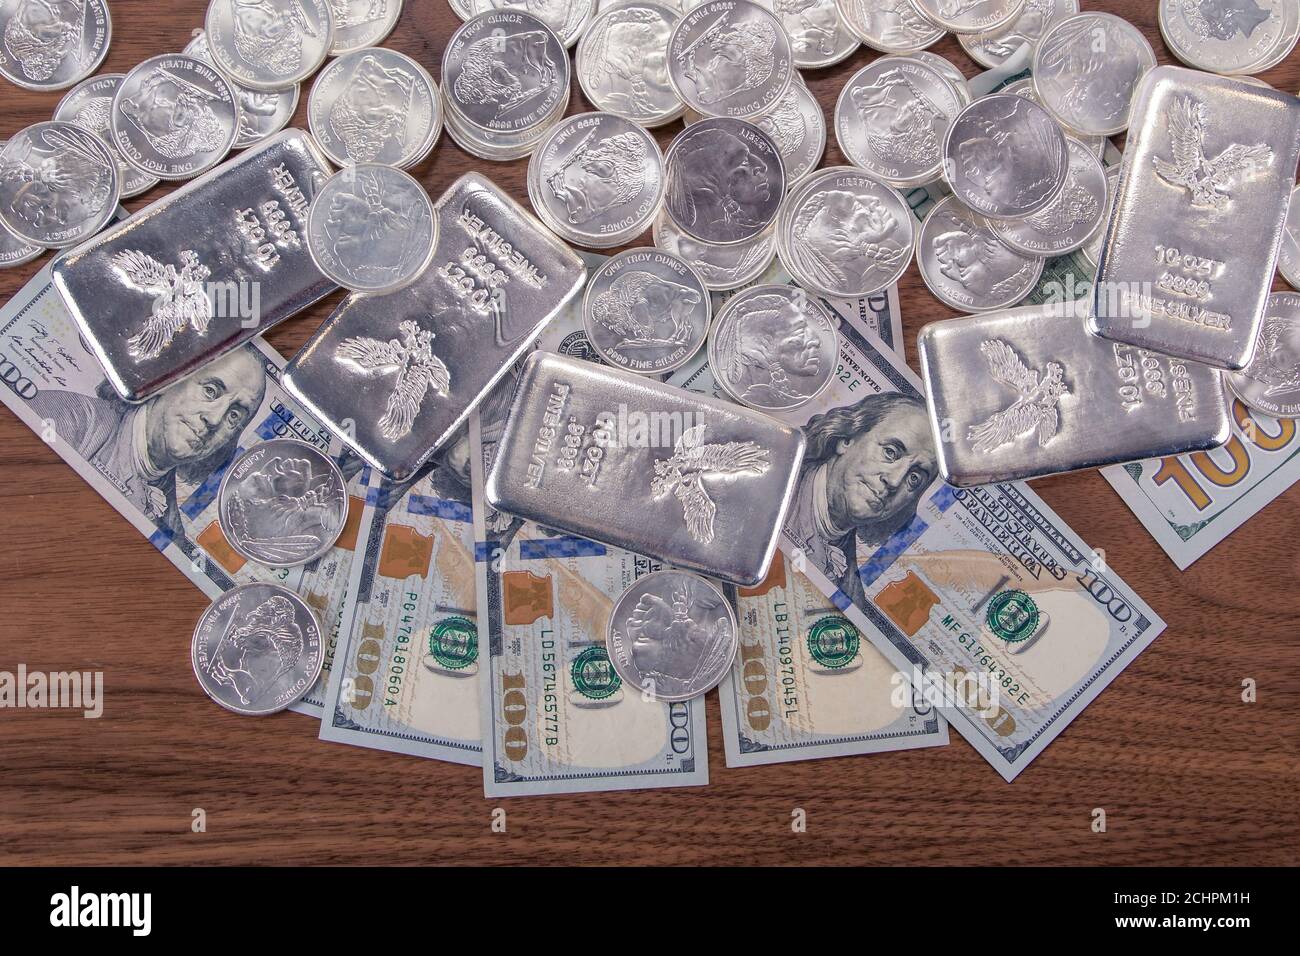 Gros plan des barres d'argent et des pièces d'argent et 100 dollars factures sur table en bois Banque D'Images